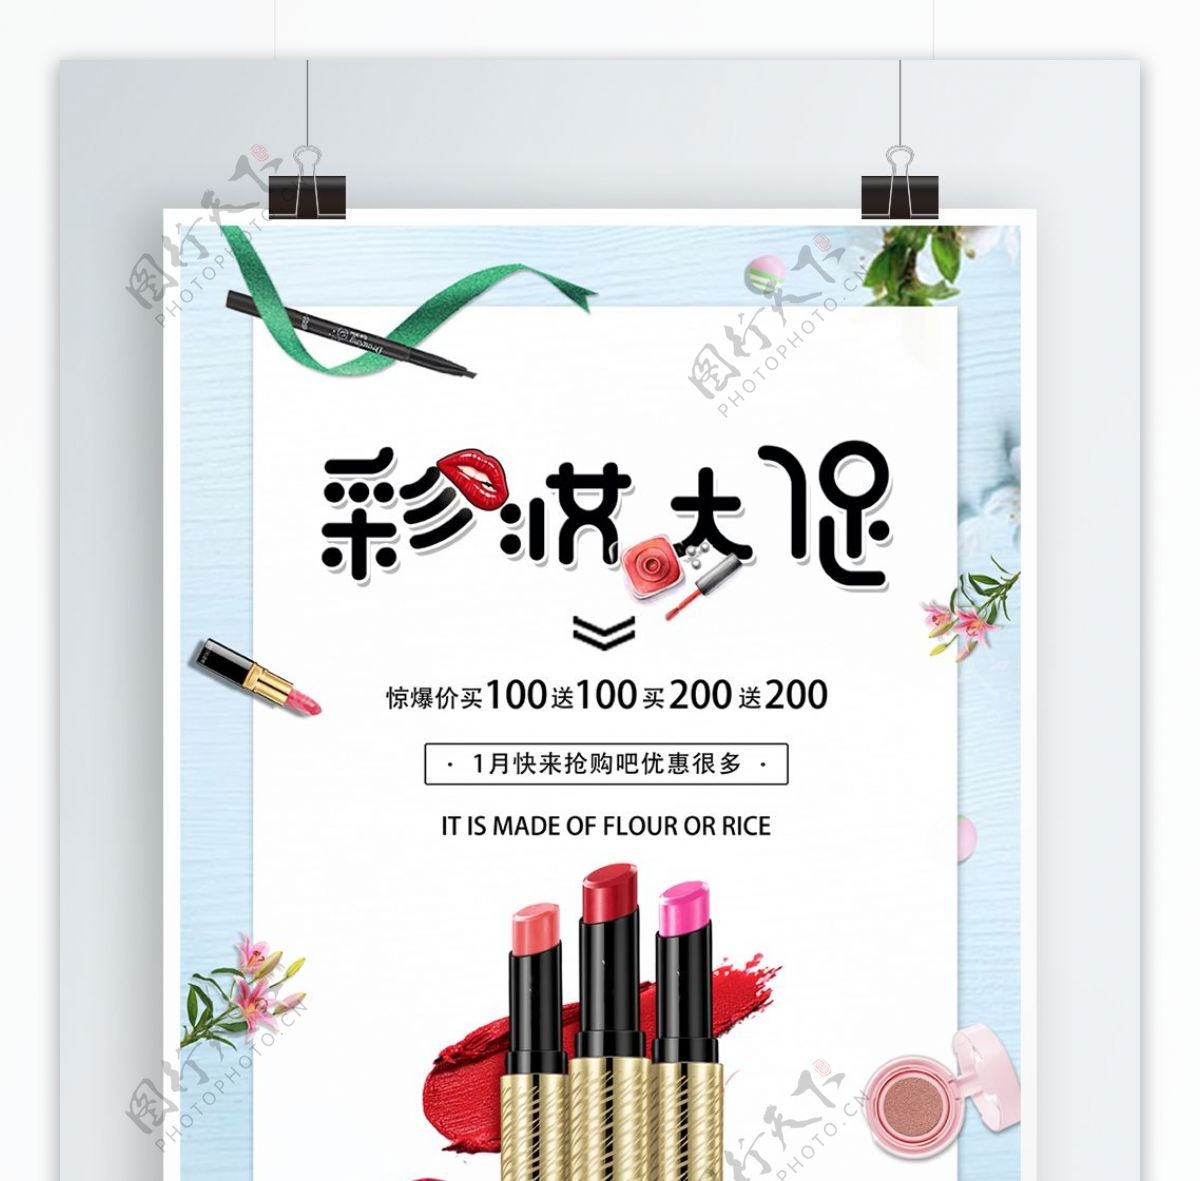 简约小清新美妆促销海报设计